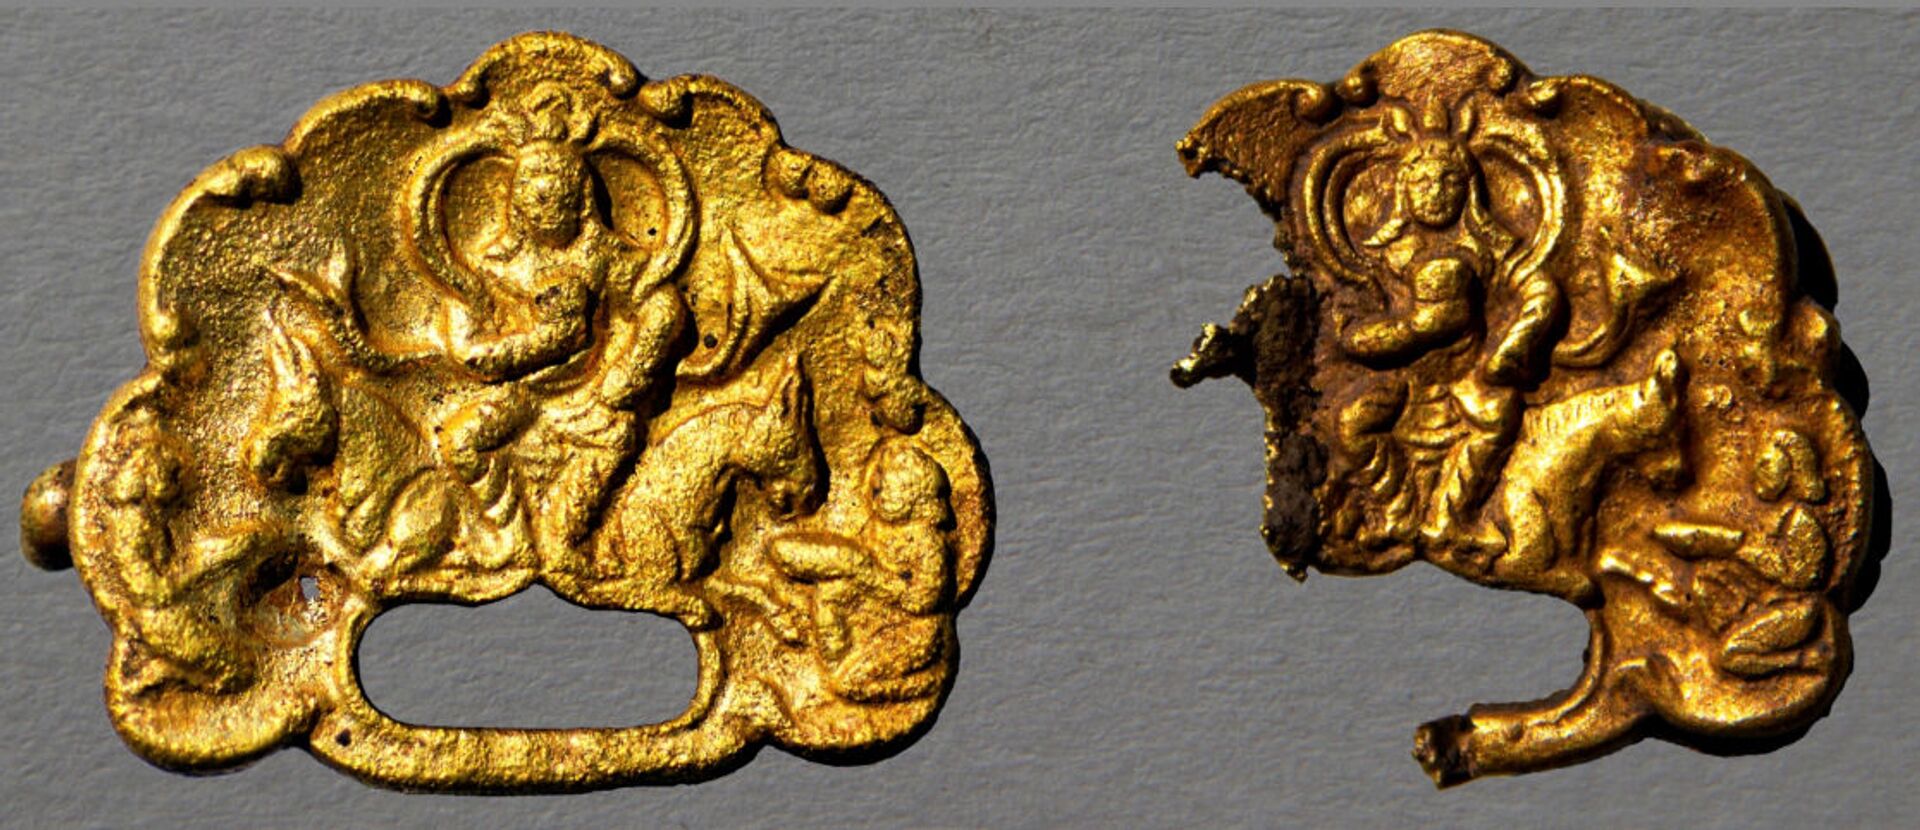 Золотые артефакты с изображением древних правителей найдены в Восточном Казахстане - Sputnik Казахстан, 1920, 14.07.2021